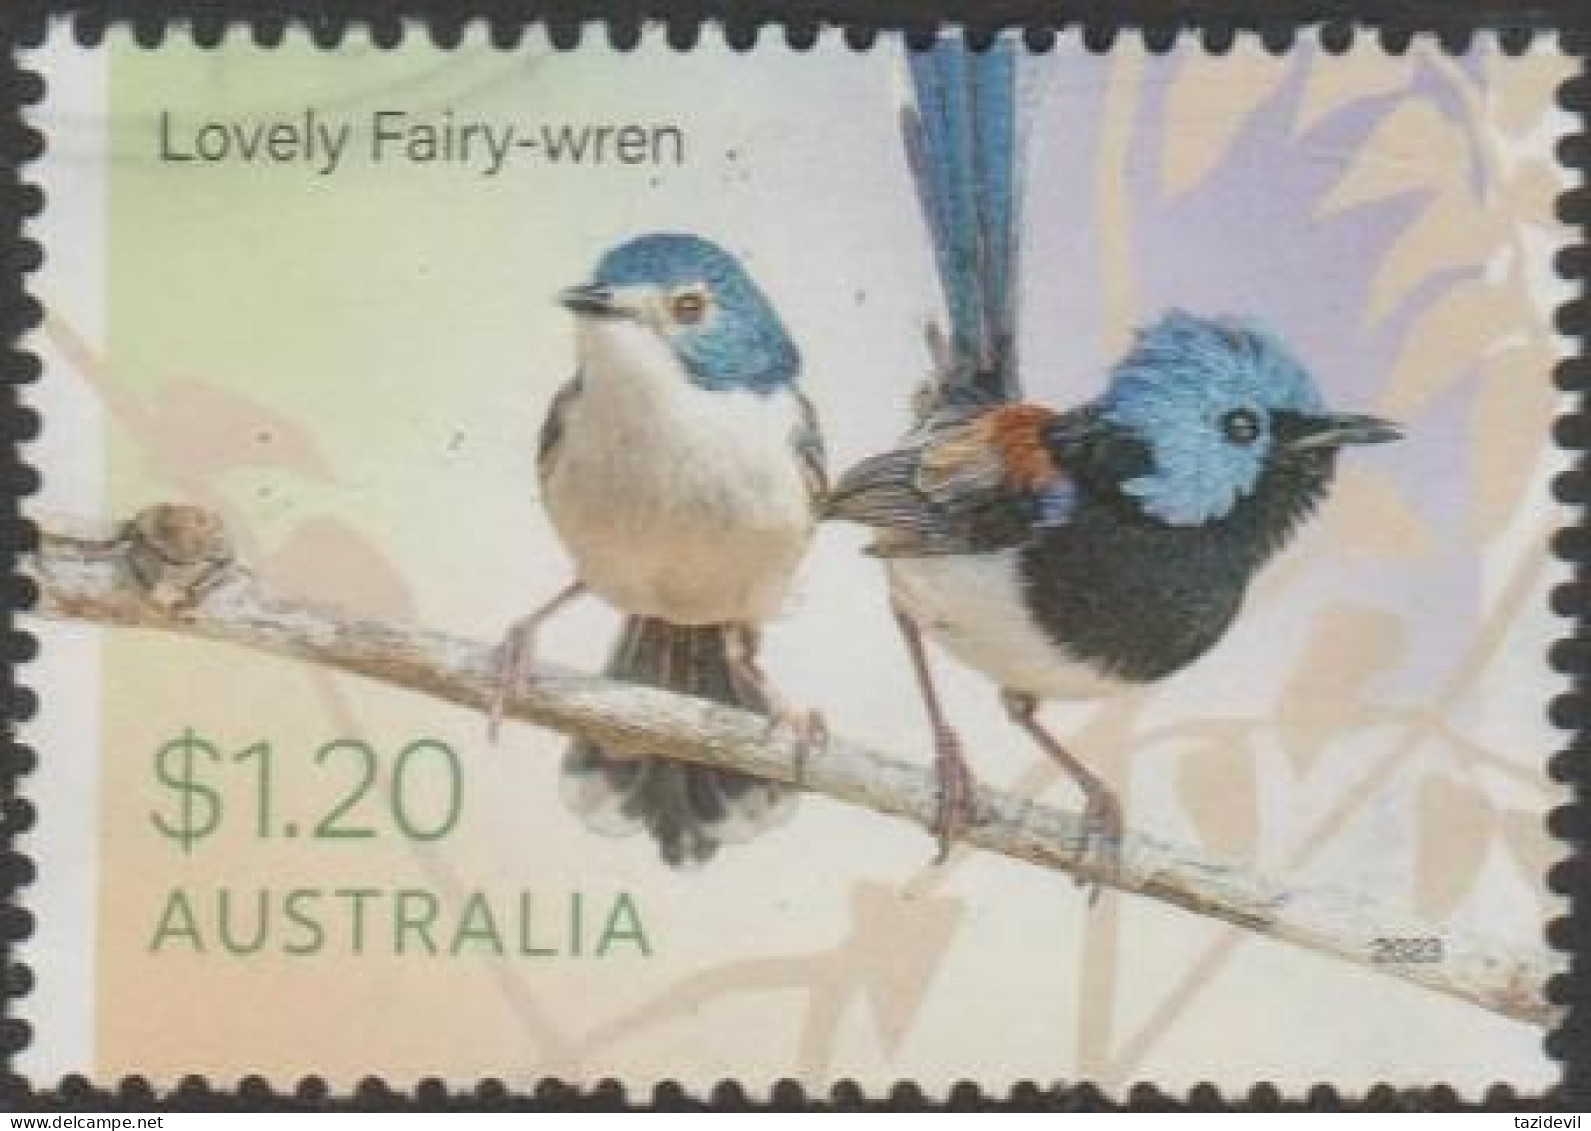 AUSTRALIA - USED 2023 $1.20 Fairy-Wrens - Lovely Fairy-Wren - Gebraucht